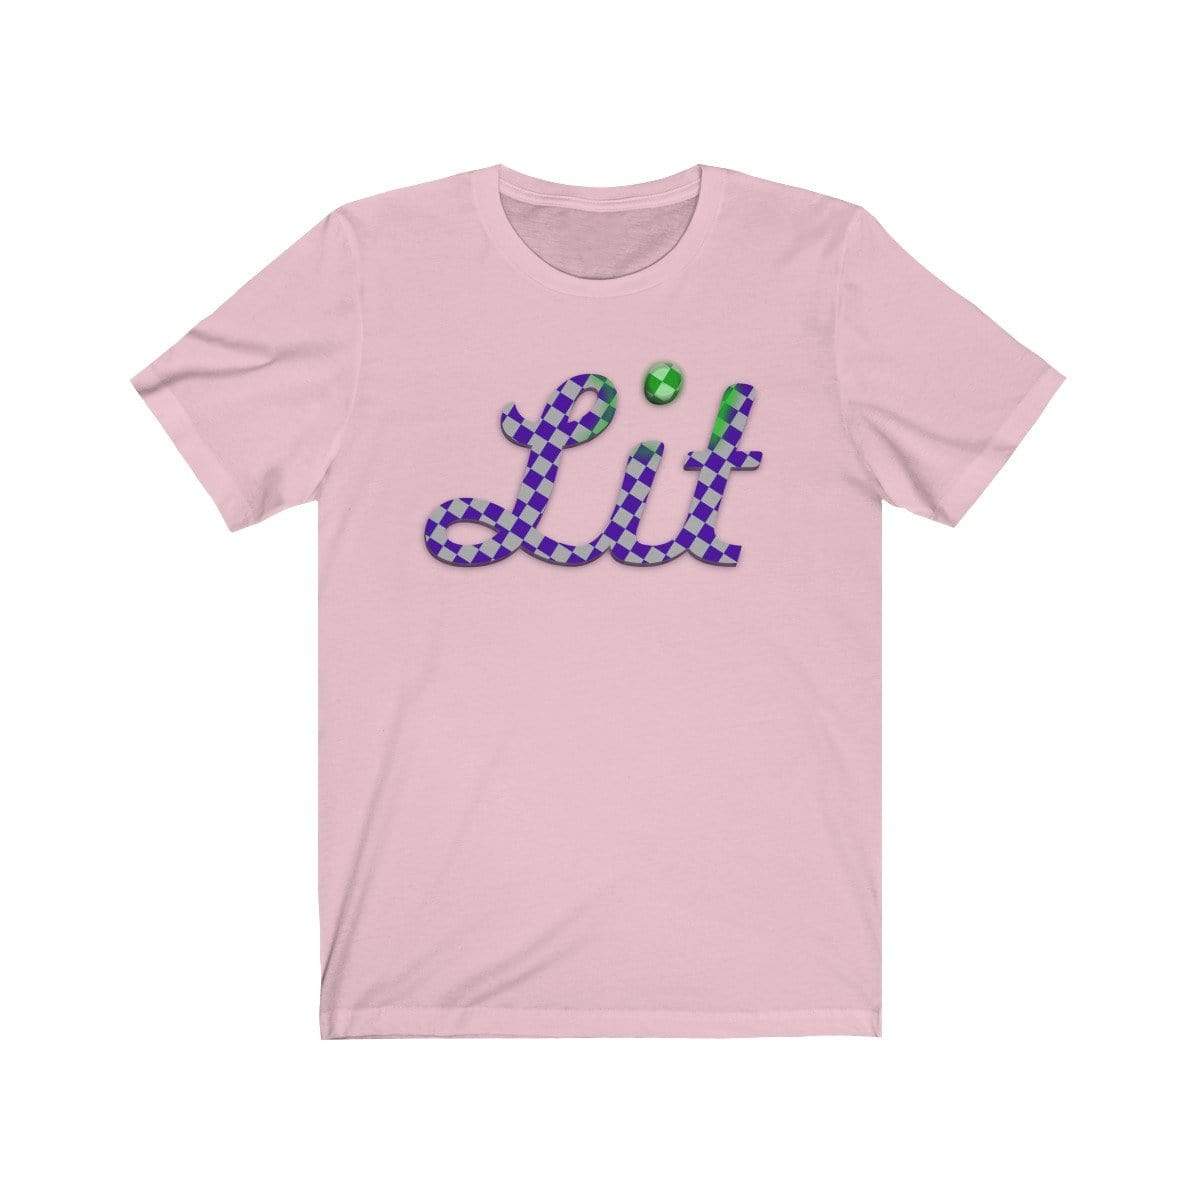 Plumskum T-Shirt Pink / S Checkered Lit T-shirt